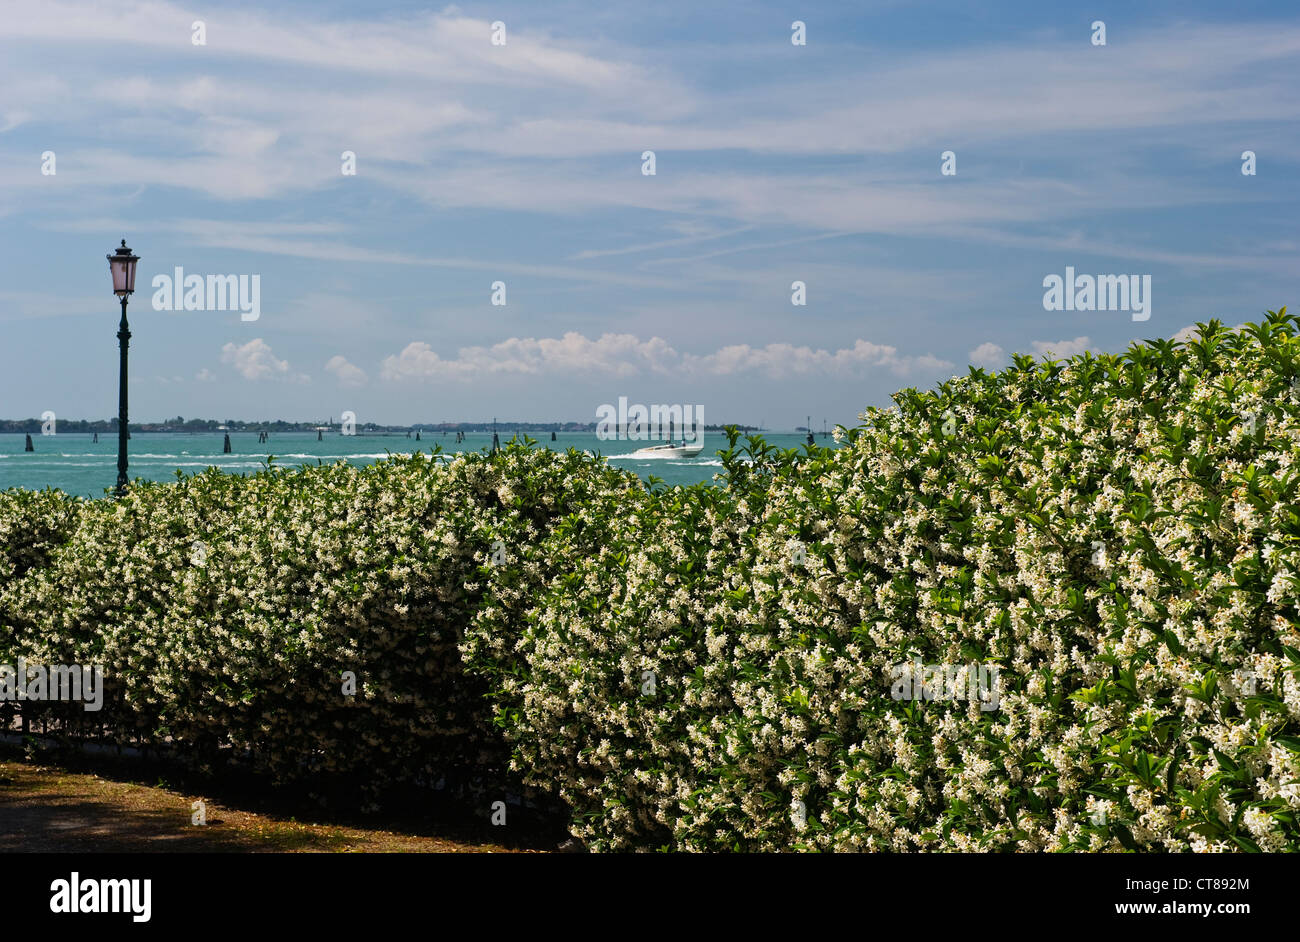 Una siepe fiorente del profumato trachelospermum jasminoides di fronte ai Giardini della Biennale di Venezia Foto Stock